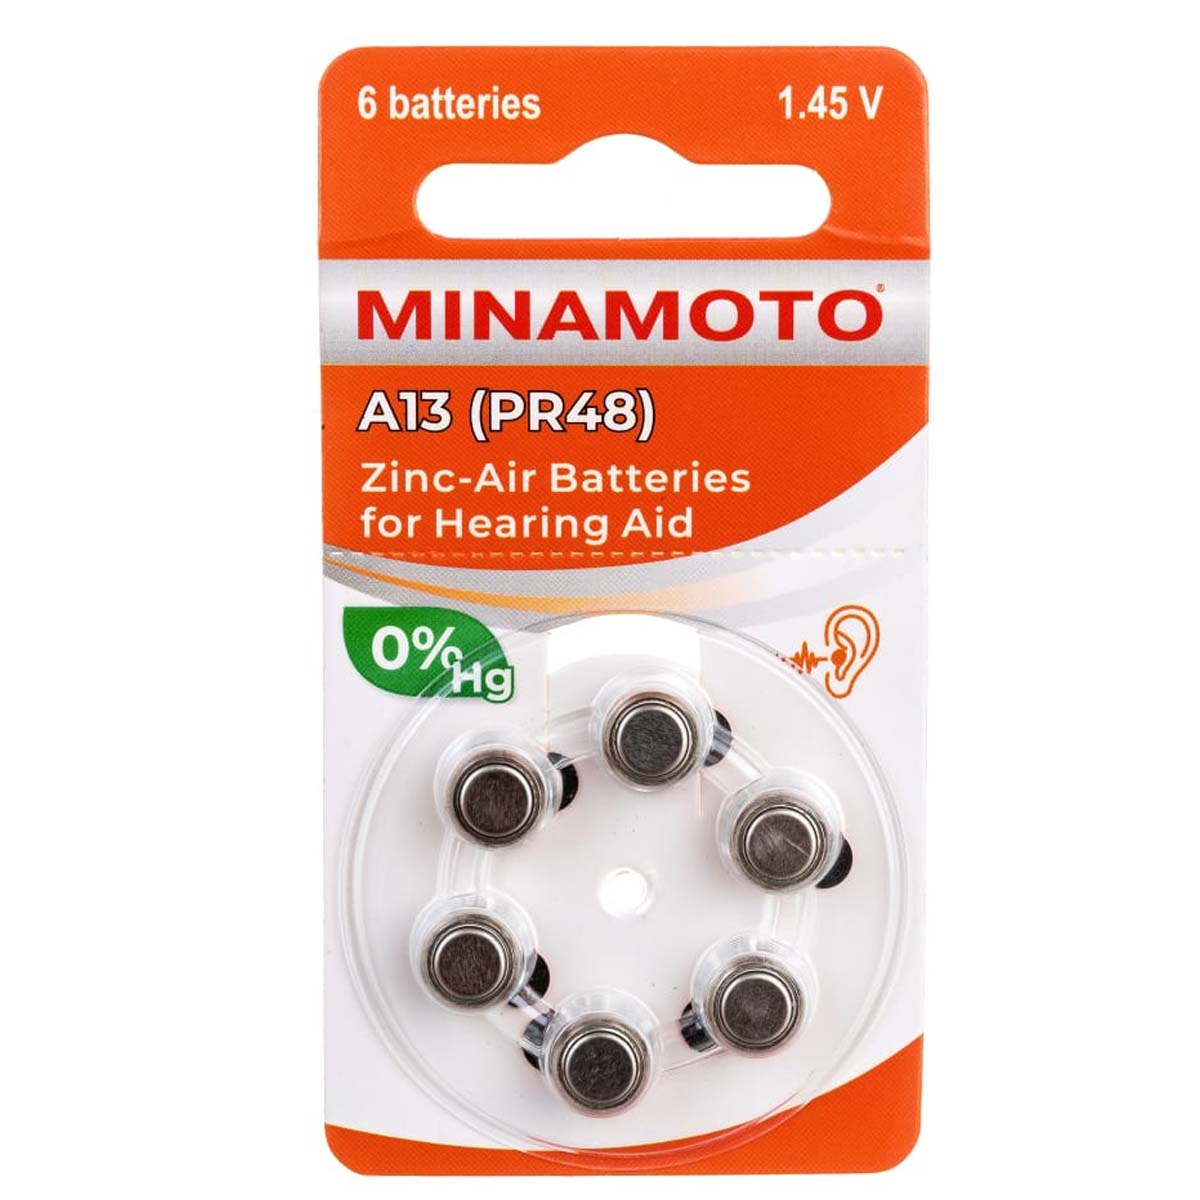 Батарейка MINAMOTO A13 (PR48 / ZA13 / V13A / DA13) BL6 Zinc-Air 1.45V для слуховых аппаратов